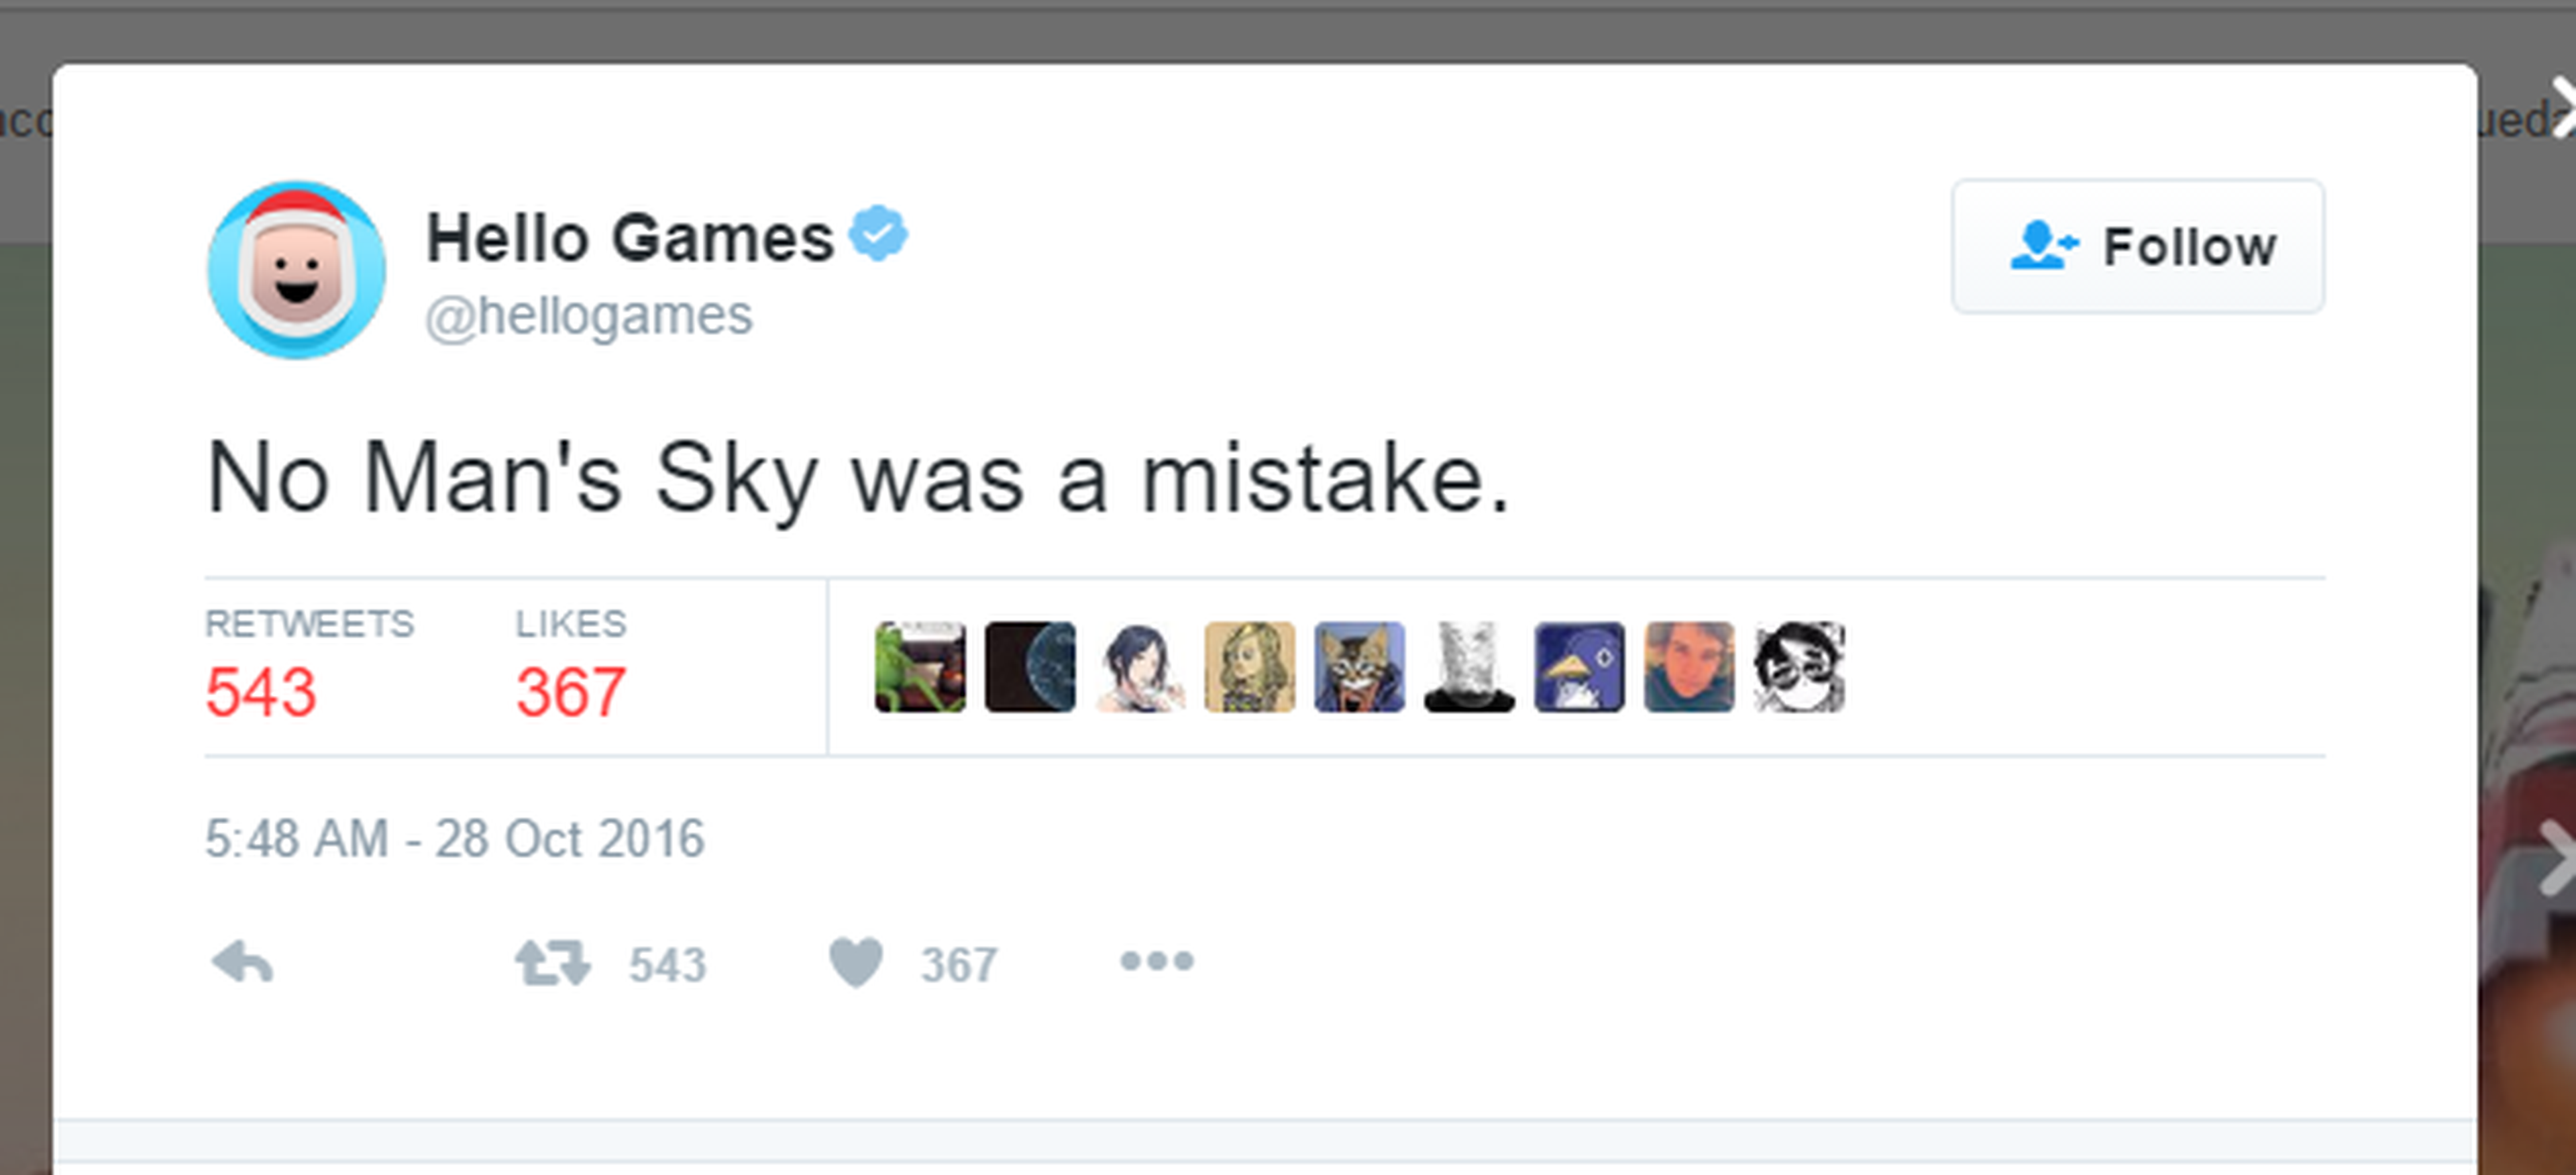 Hackean la cuenta de Twitter de Hello Games y dicen que "No Man's Sky fue un error"